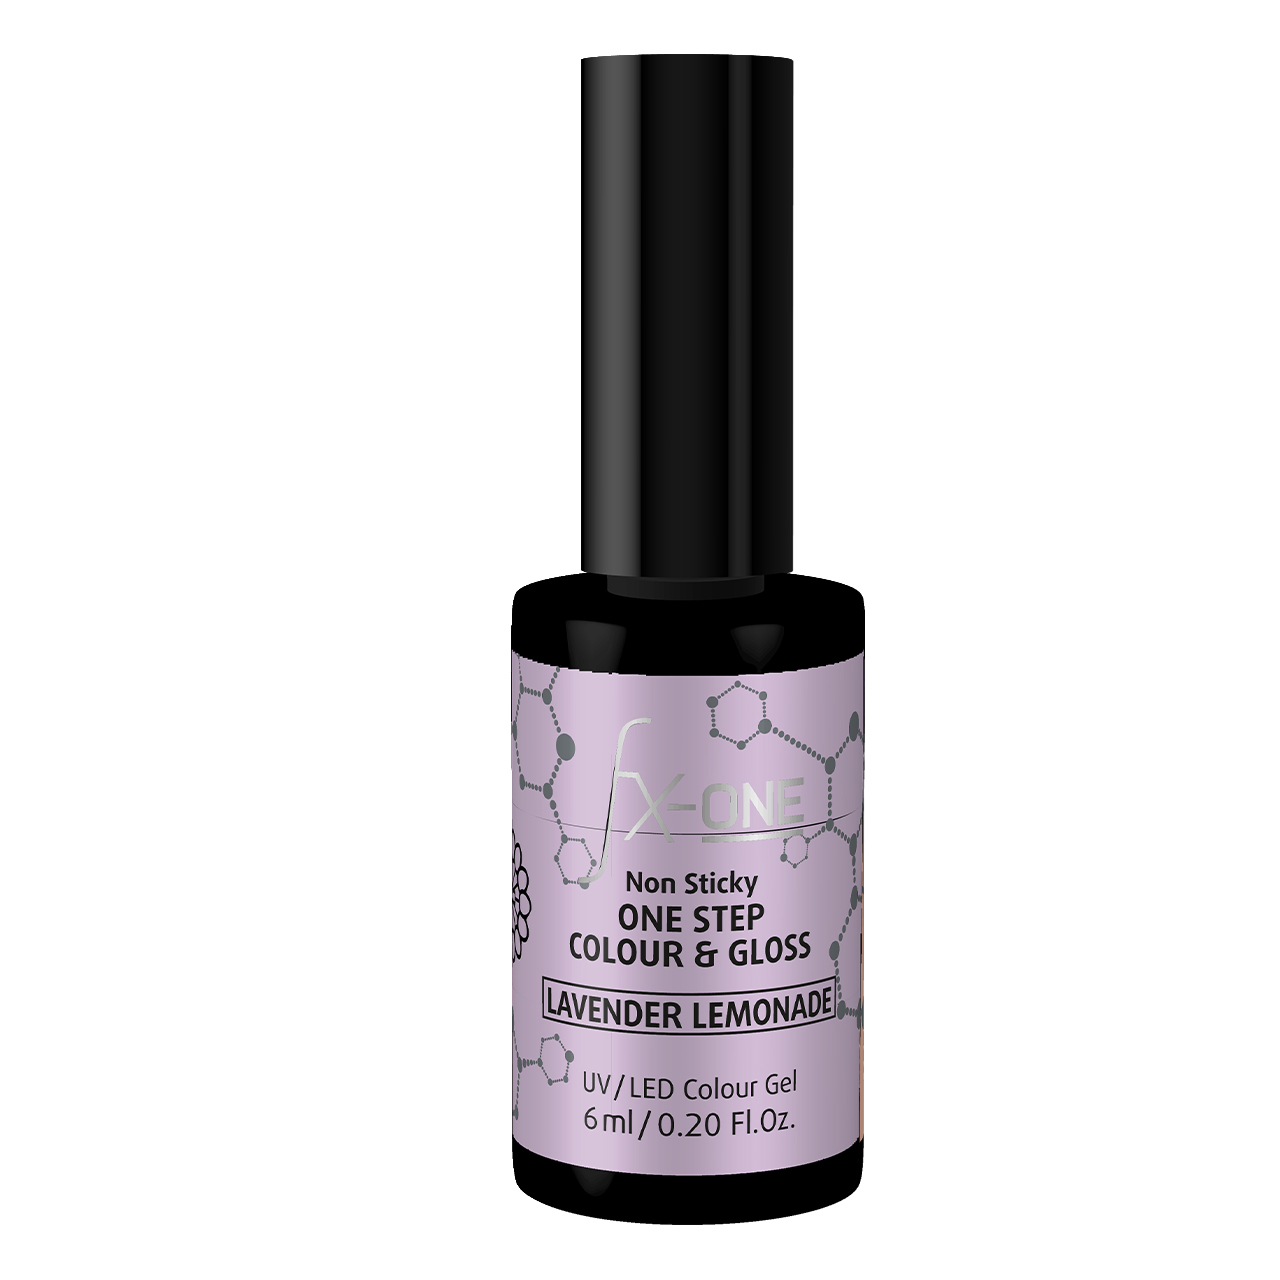 FX-ONE Colour & Gloss Lavender Lemode 6 Ml